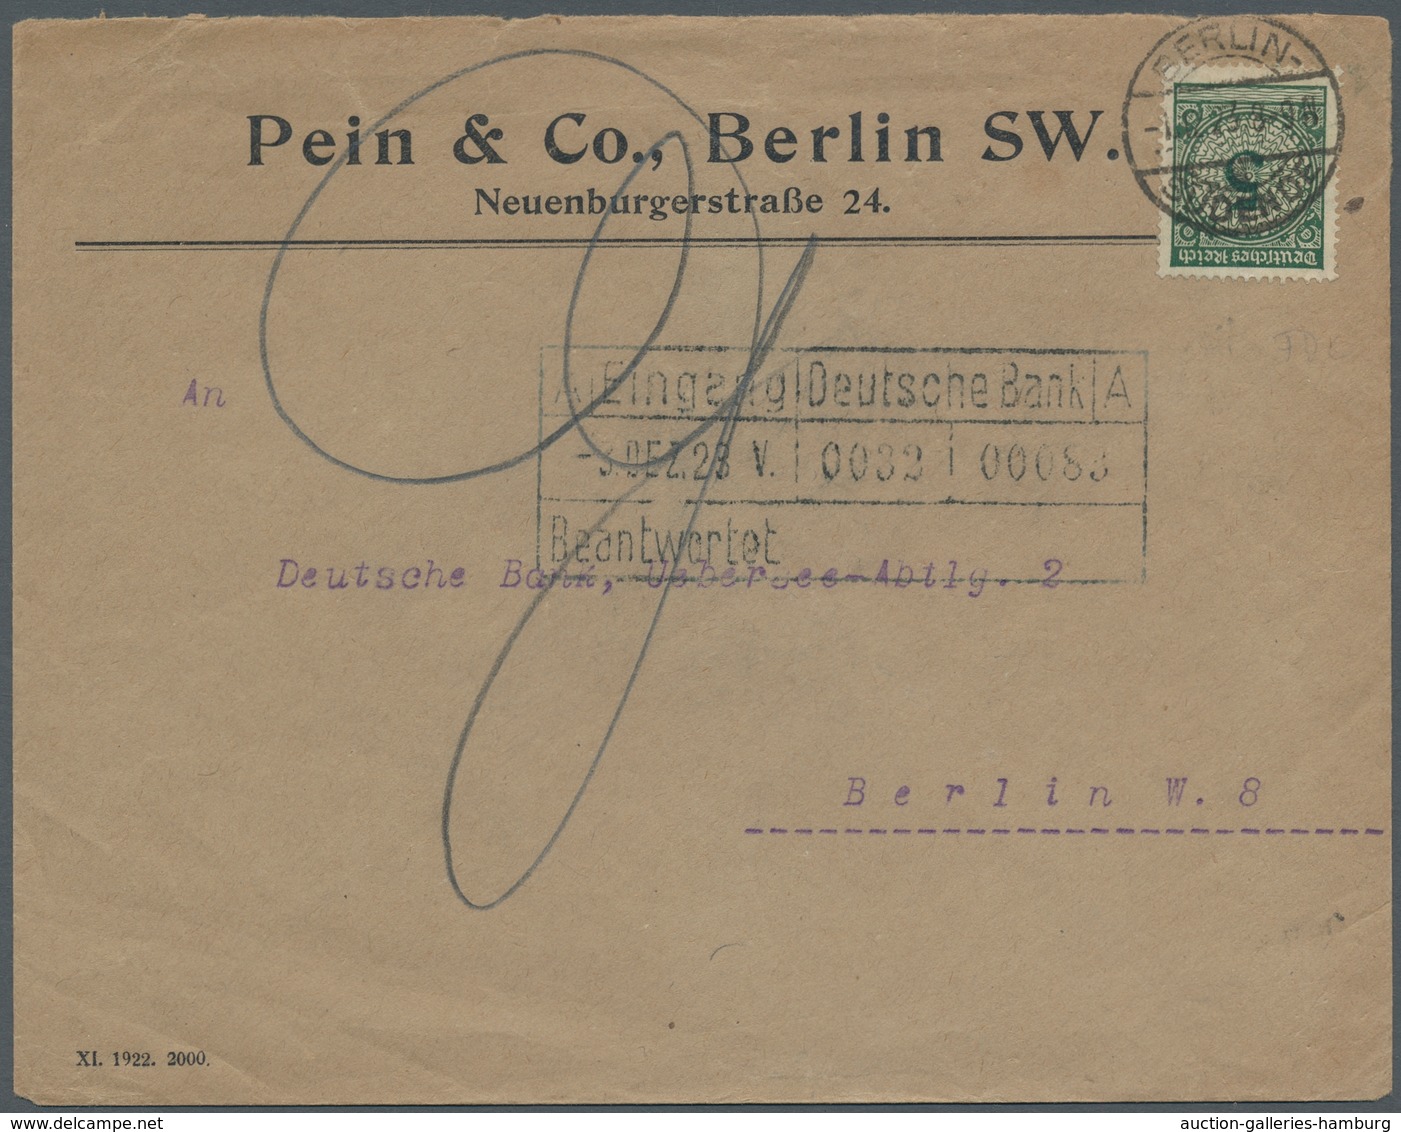 Deutsches Reich - Weimar: 1923, 5Pf. Einzelfrankatur Mit Ersttagstpl. Vom 1.12.23 Auf Bedarfsbrief - Neufs